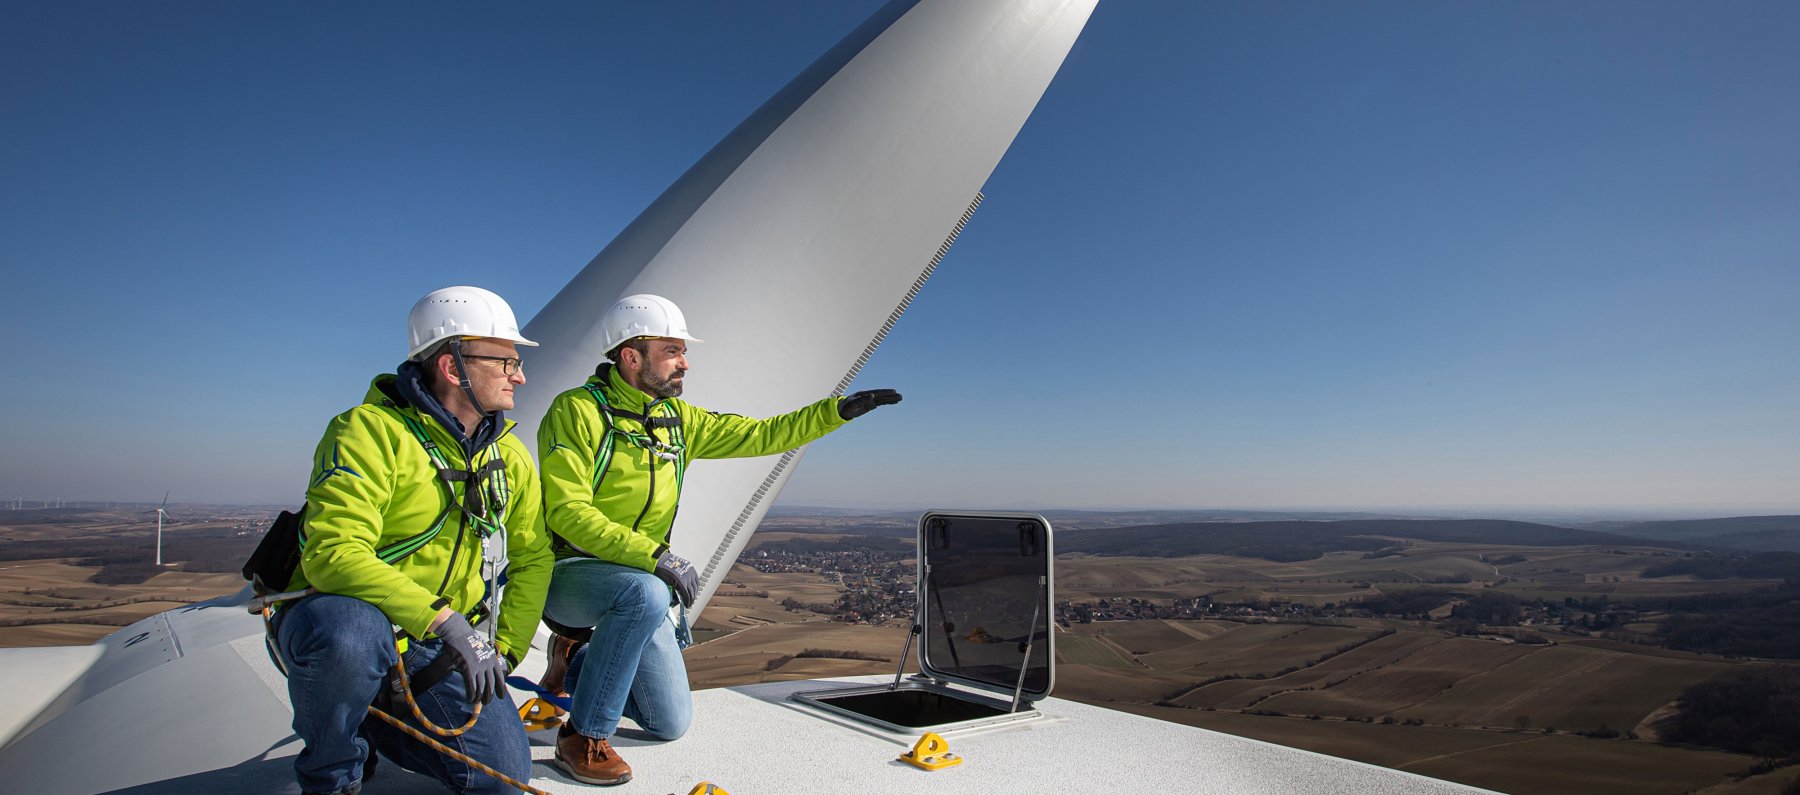 Die Geschäftsführer der Windkraft Simonsfeld auf einer Windkraftanlage. Über Ihnen der blaue Himmel. Hinter Ihnen ein Flügel der Windkraftanlage.